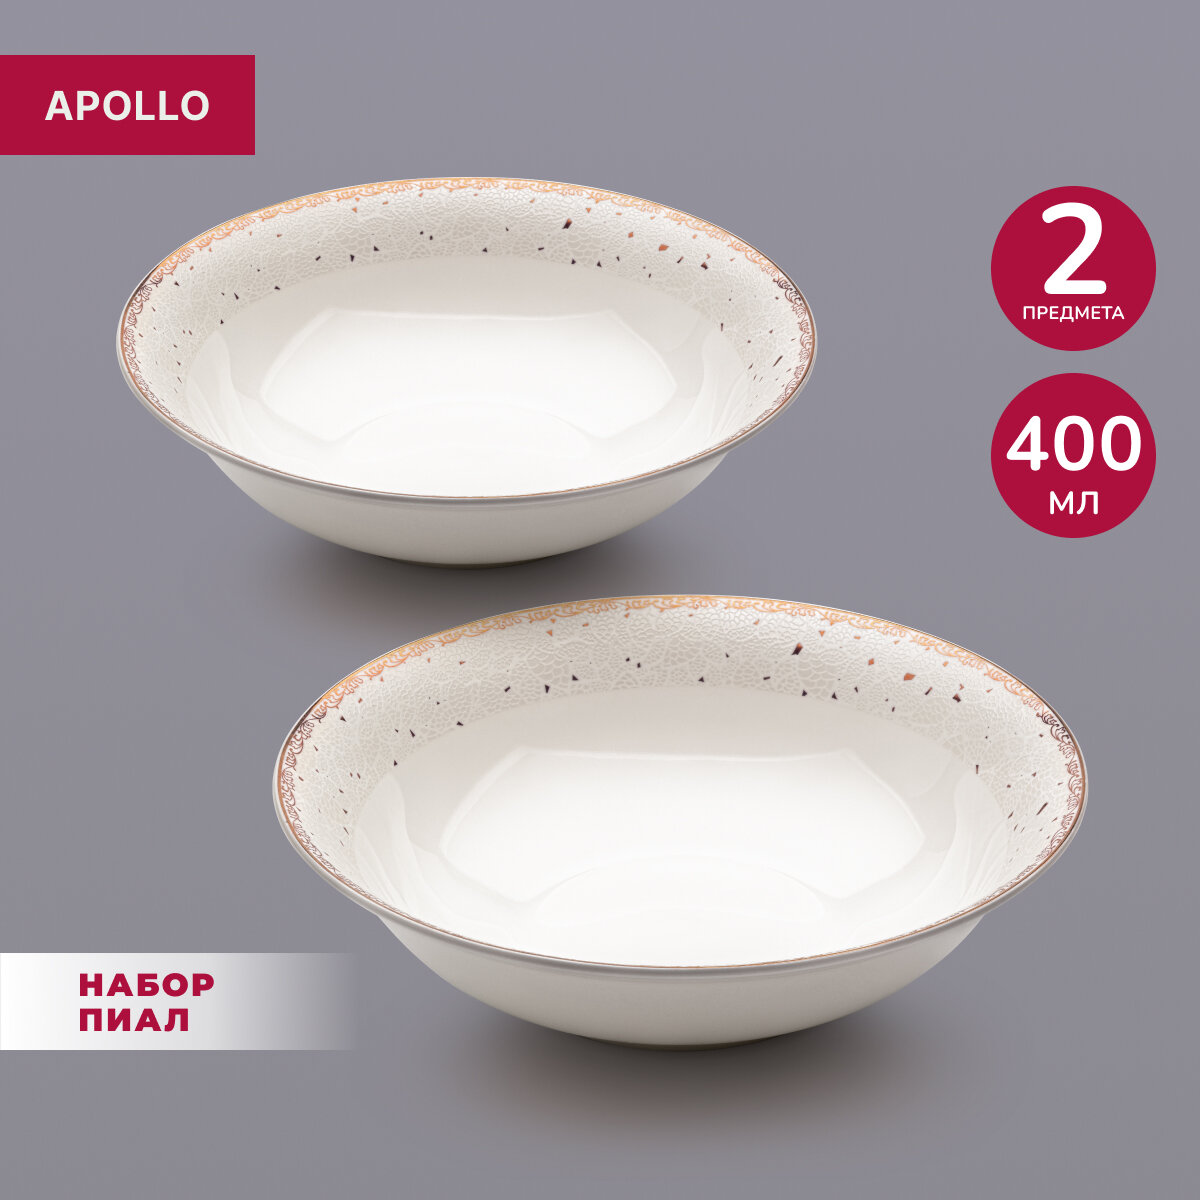 Тарелка глубокая суповая фарфоровая, набор обеденных тарелок, салатник для сервировки Apollo "Unpoko", диаметр 16 см, 400 мл, 2 предмета